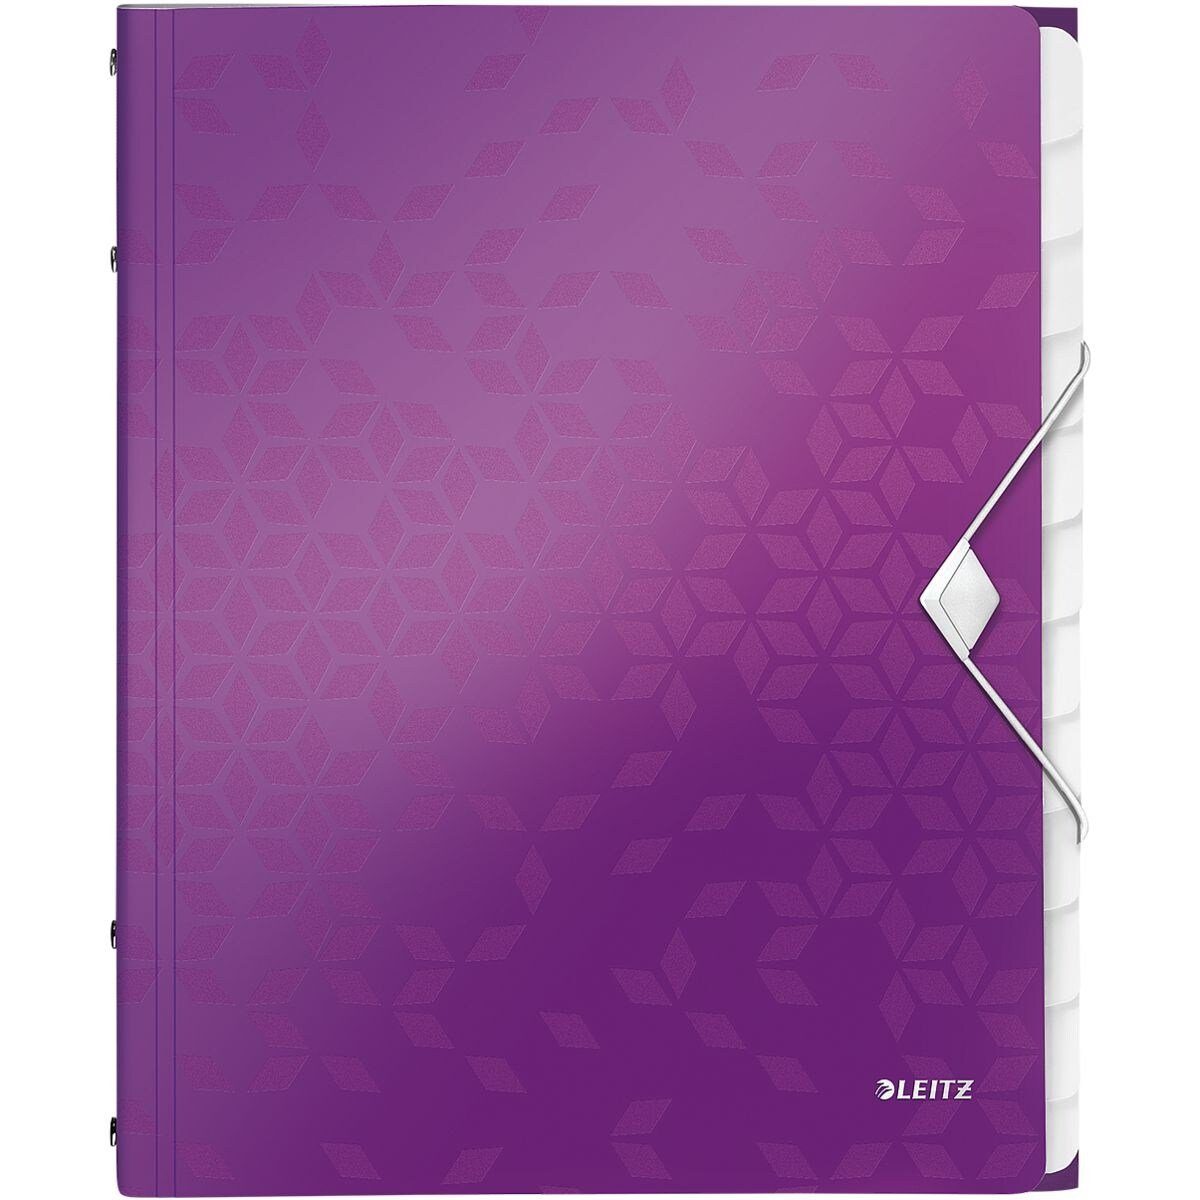 LEITZ Organisationsmappe WOW 4634, Ordnungsmappe mit 12 Fächern, A4 violett metallic